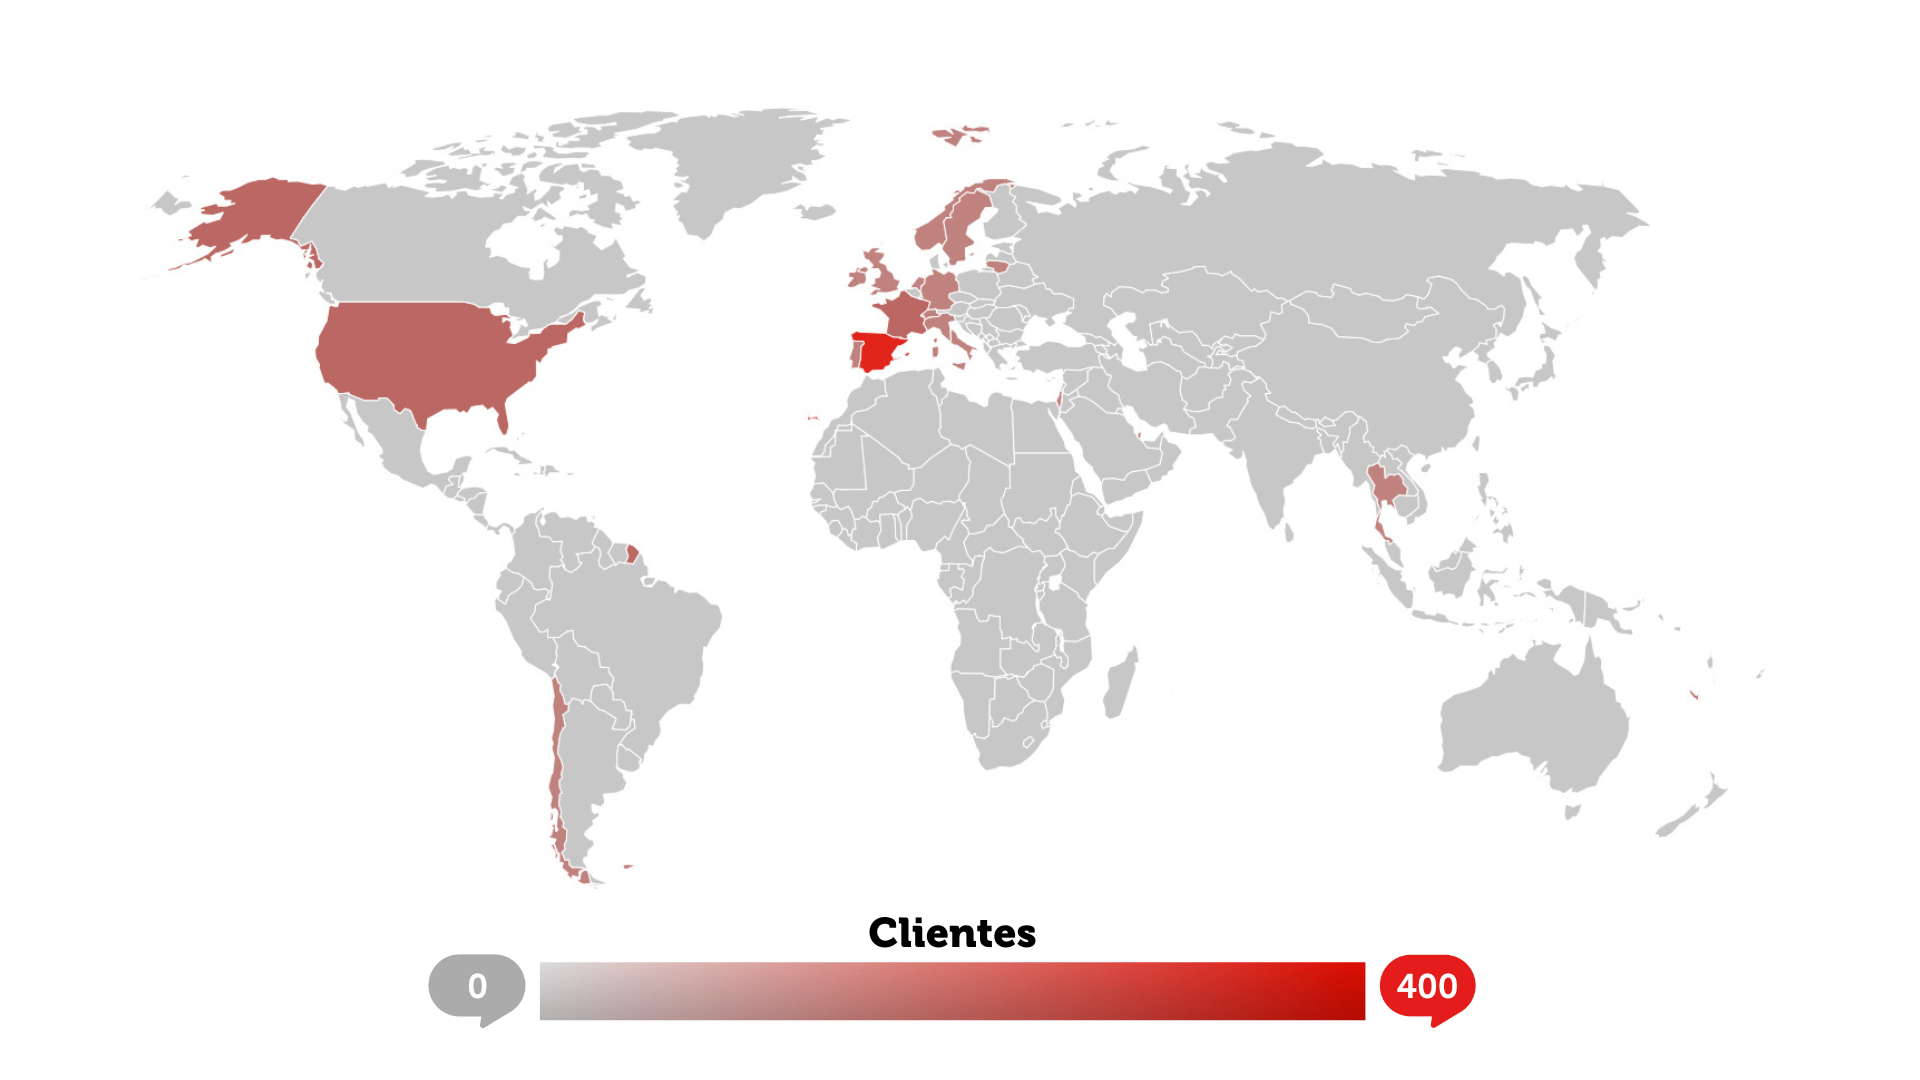 Mapa del mundo en el que salen marcados en rojo los países de donde provienen nuestros clientes en rojo